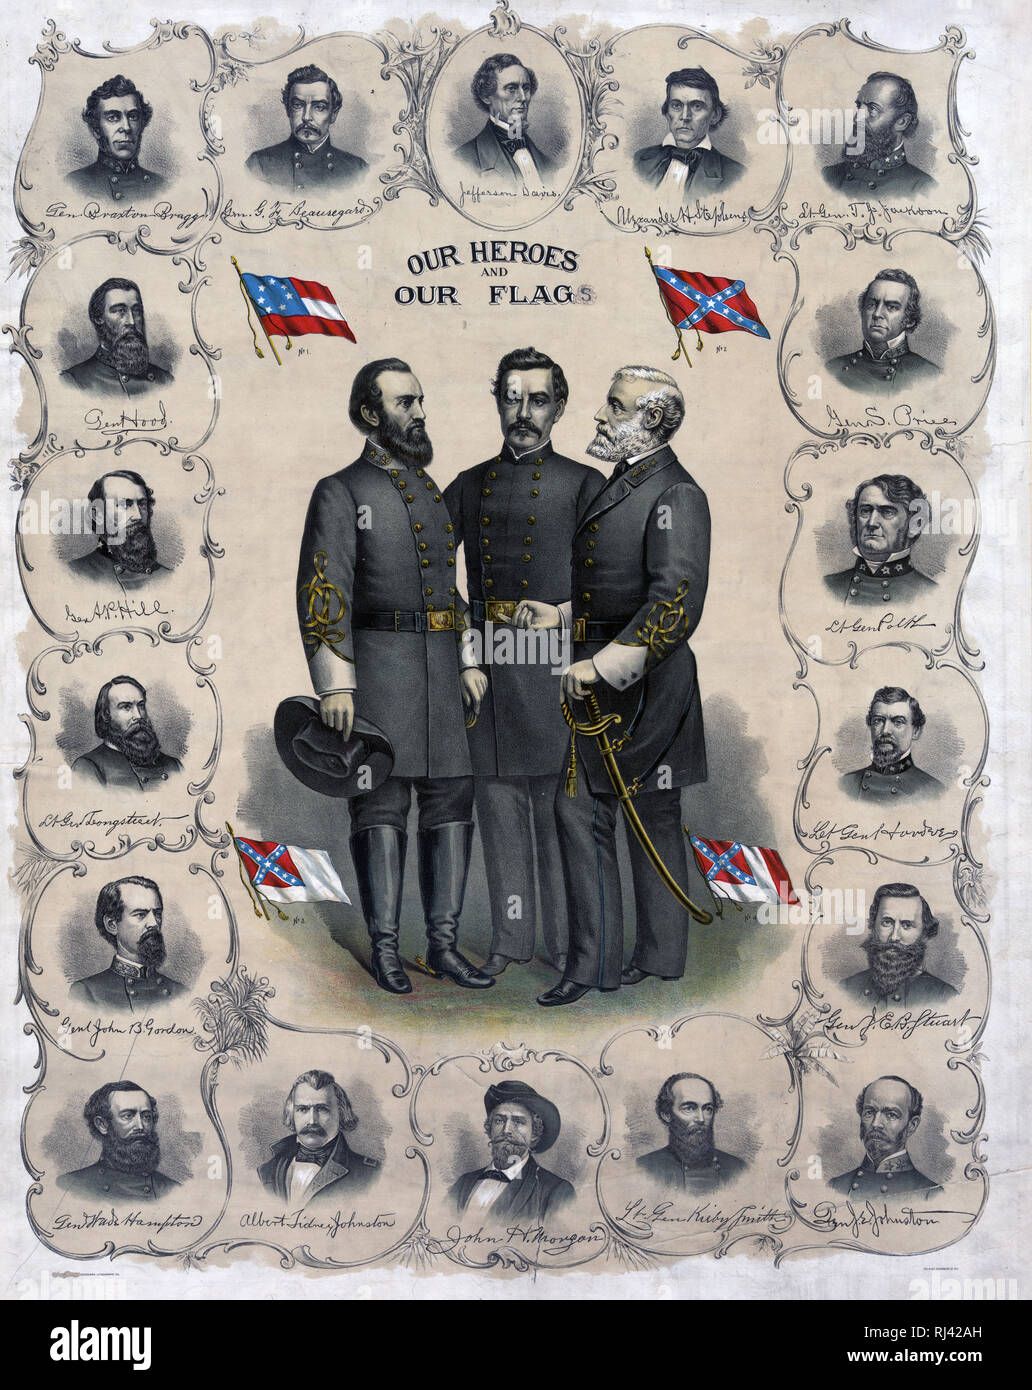 La stampa mostra a tutta lunghezza ritratti di Robert E. Lee, Stonewall Jackson e G.T. Beauregard con quattro versioni della bandiera Confederate circondato da busto ritratti di Jefferson Davis e esercito confederato ufficiali. Foto Stock